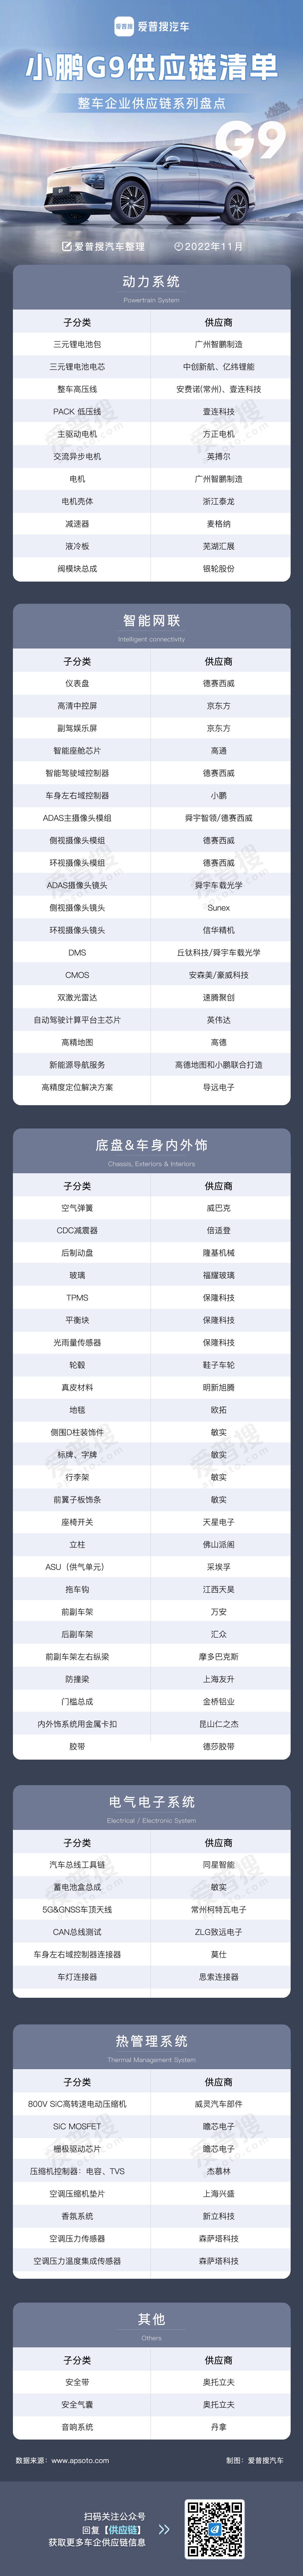 小鹏G9供应链清单